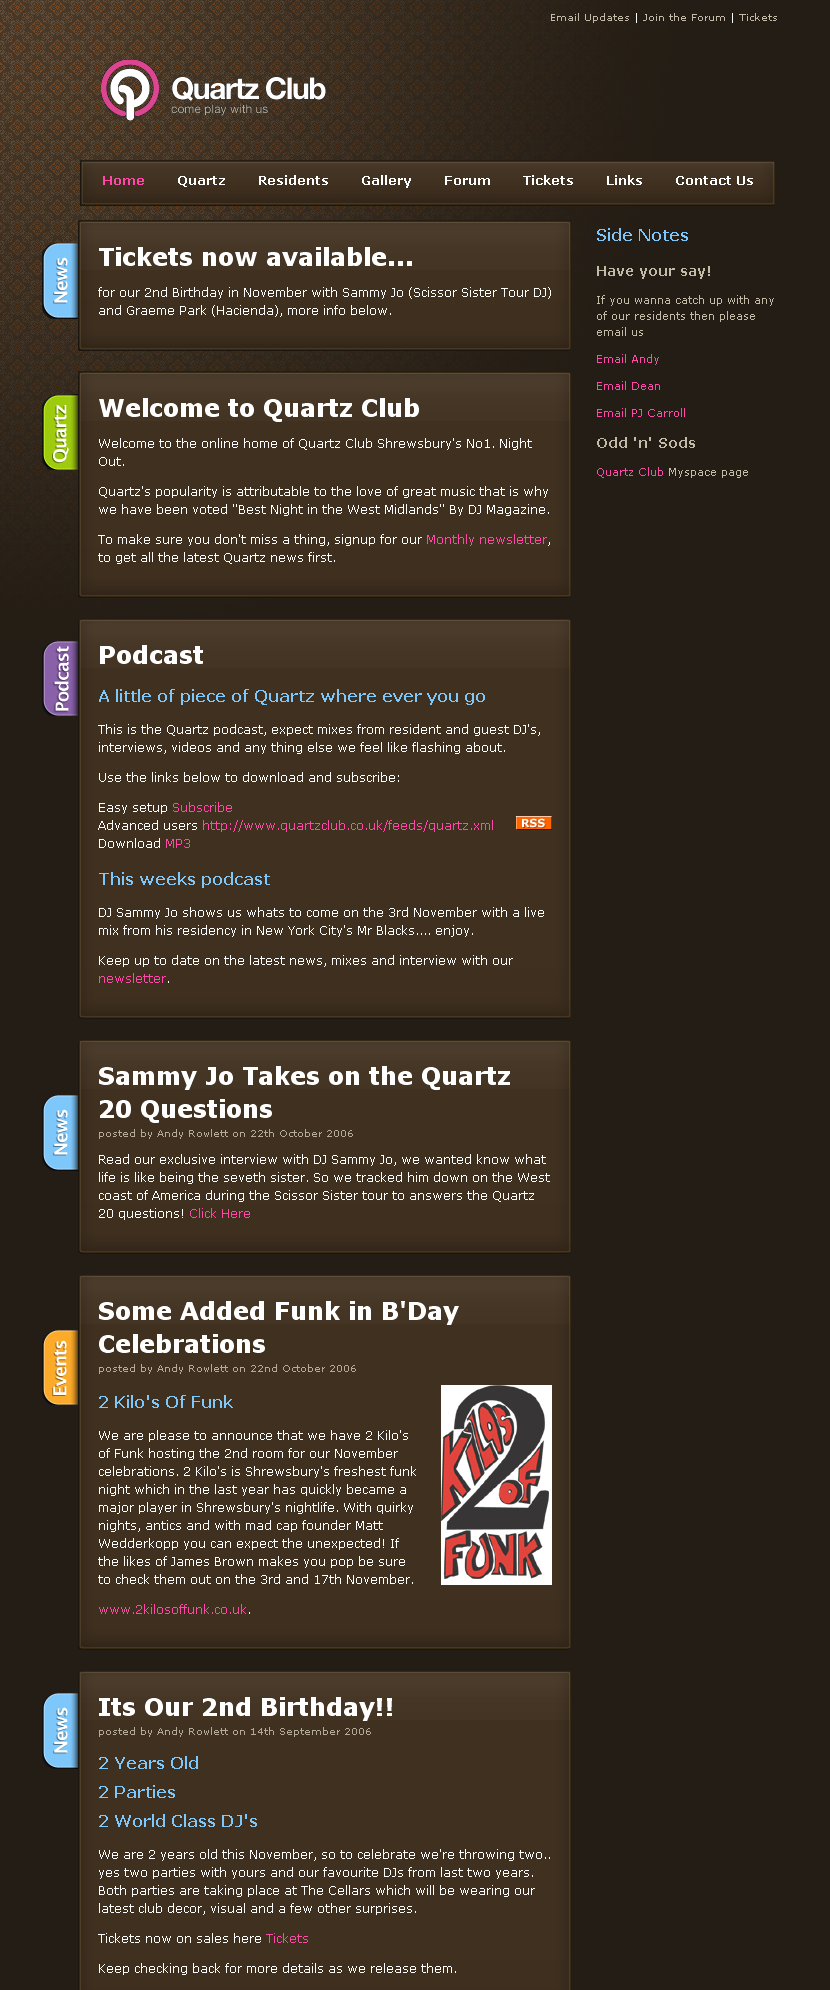 Quartz Club website in 2006